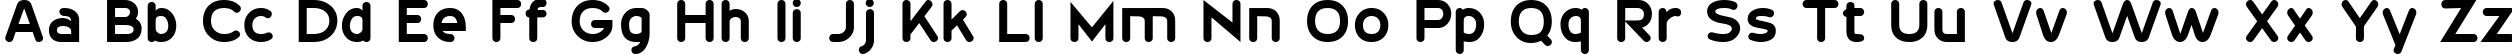 Пример написания английского алфавита шрифтом 20th Century Font